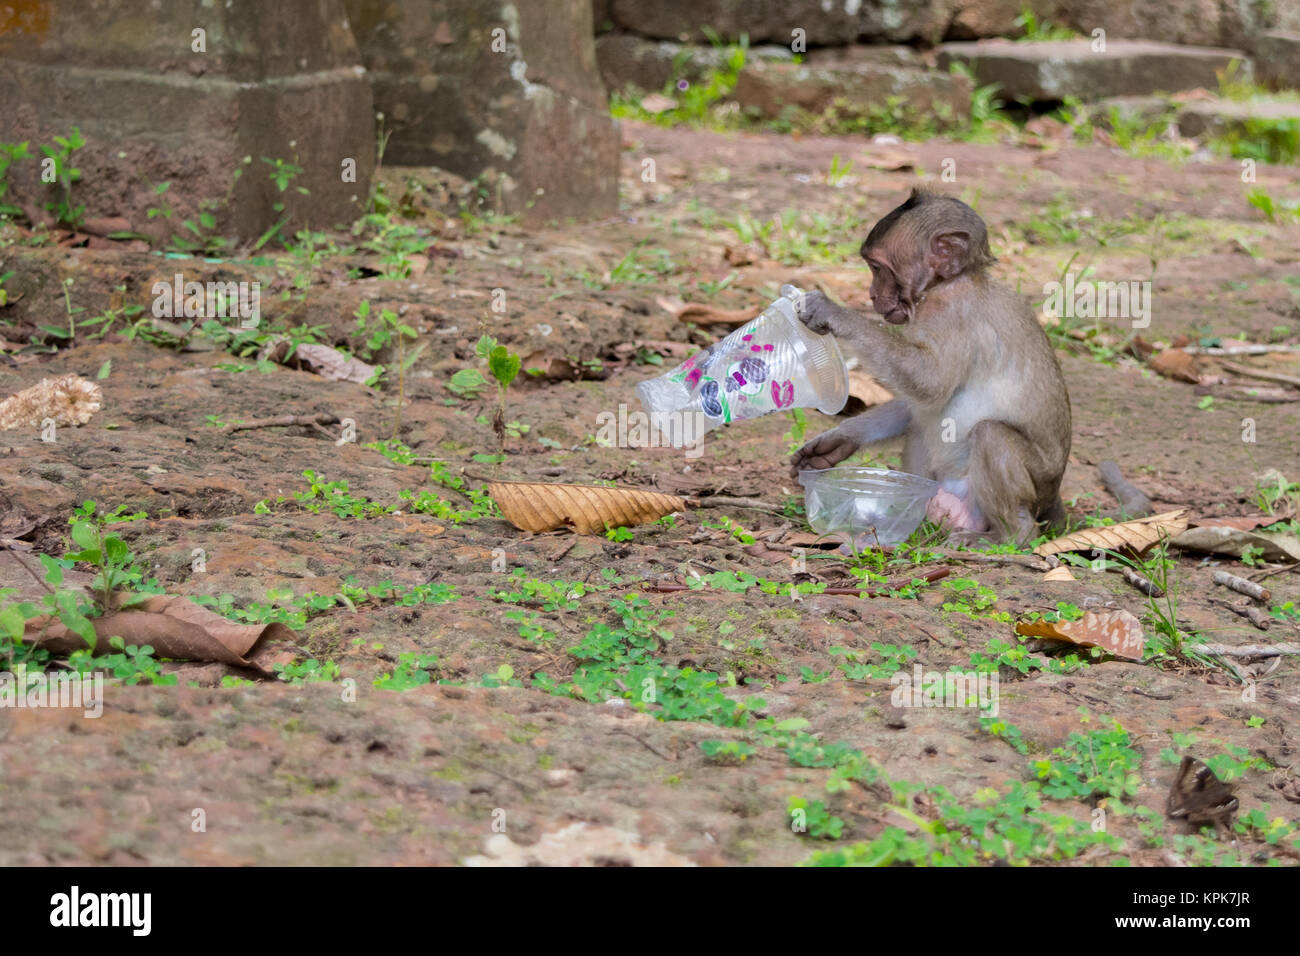 Una curiosa scimmia macaco seduto e in cerca di cibo, studiando una tazza in plastica vuota a sinistra come cestino da turisti. Cambogia, sud-est asiatico. Foto Stock